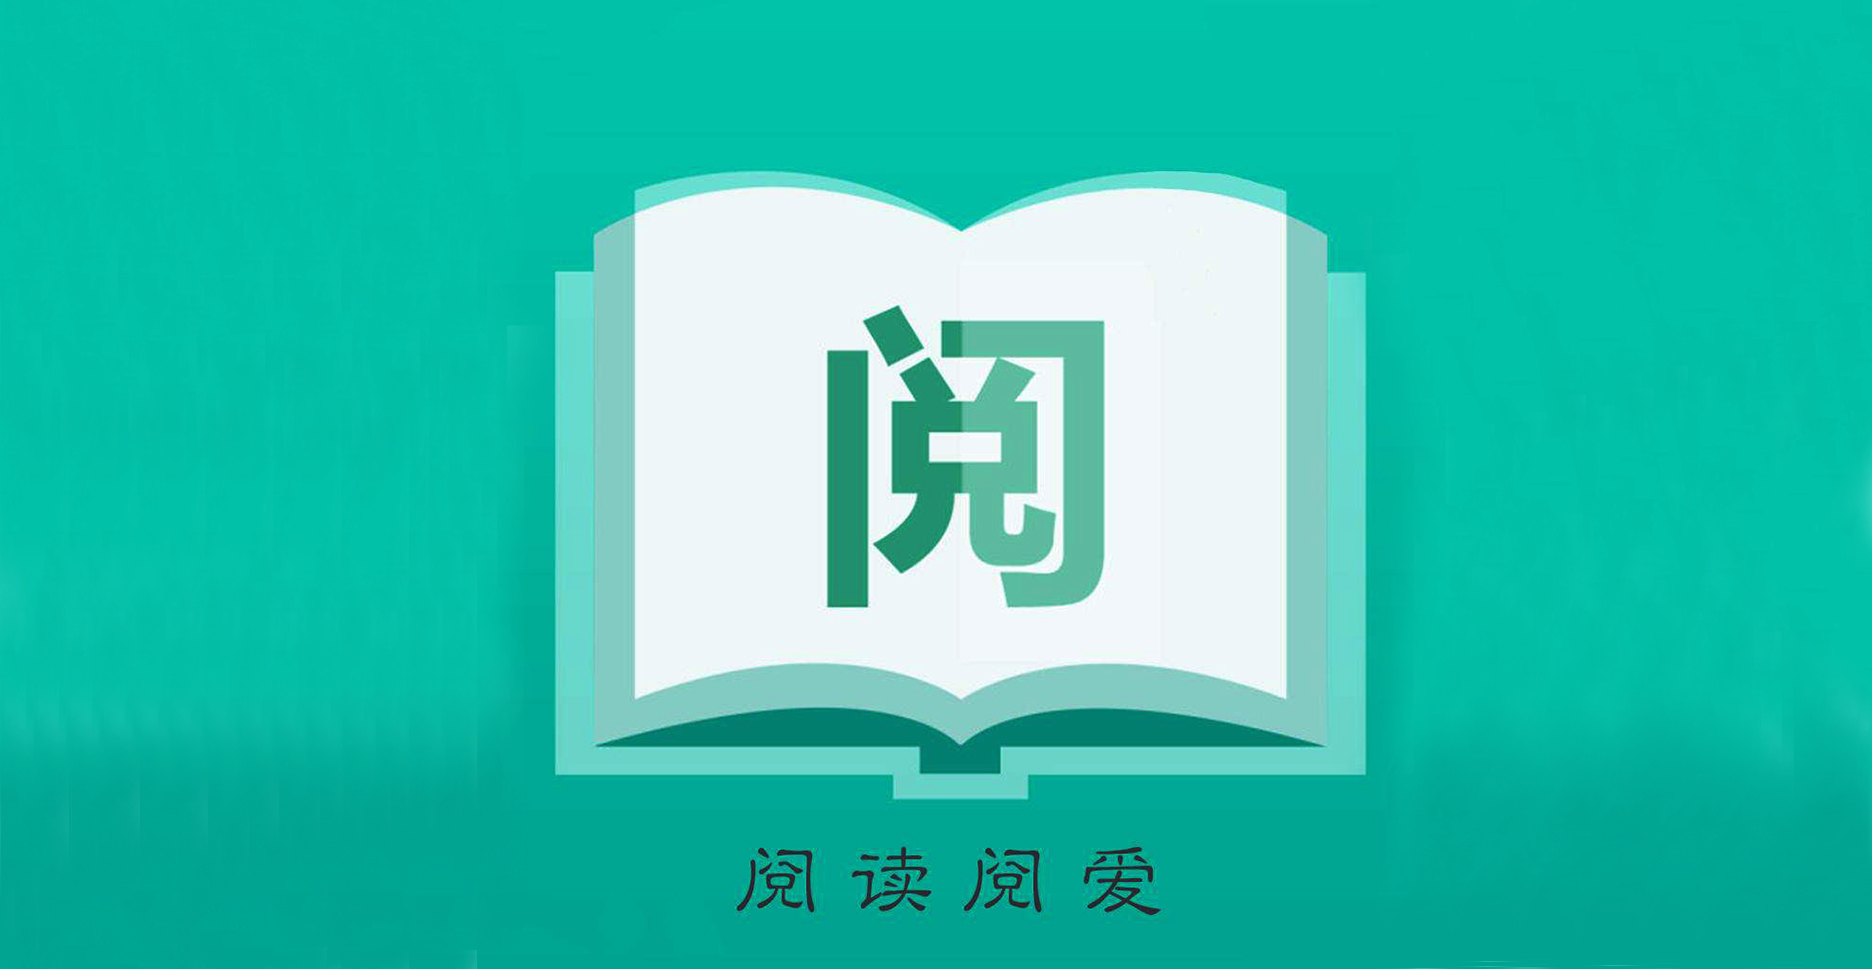 2019年中国在线阅读行业营销报告